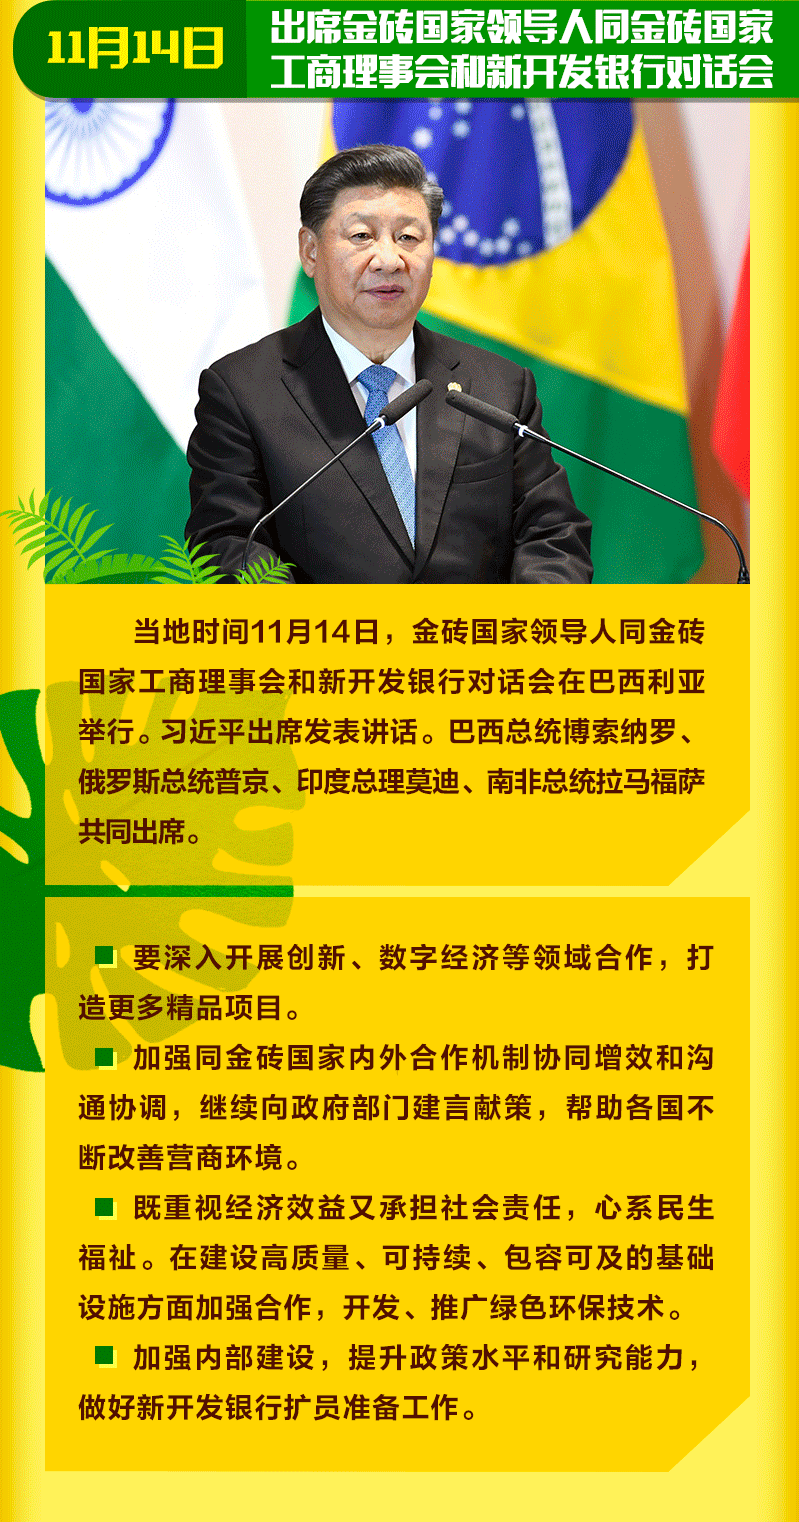 国家主席习近平出席巴西金砖峰会全记录